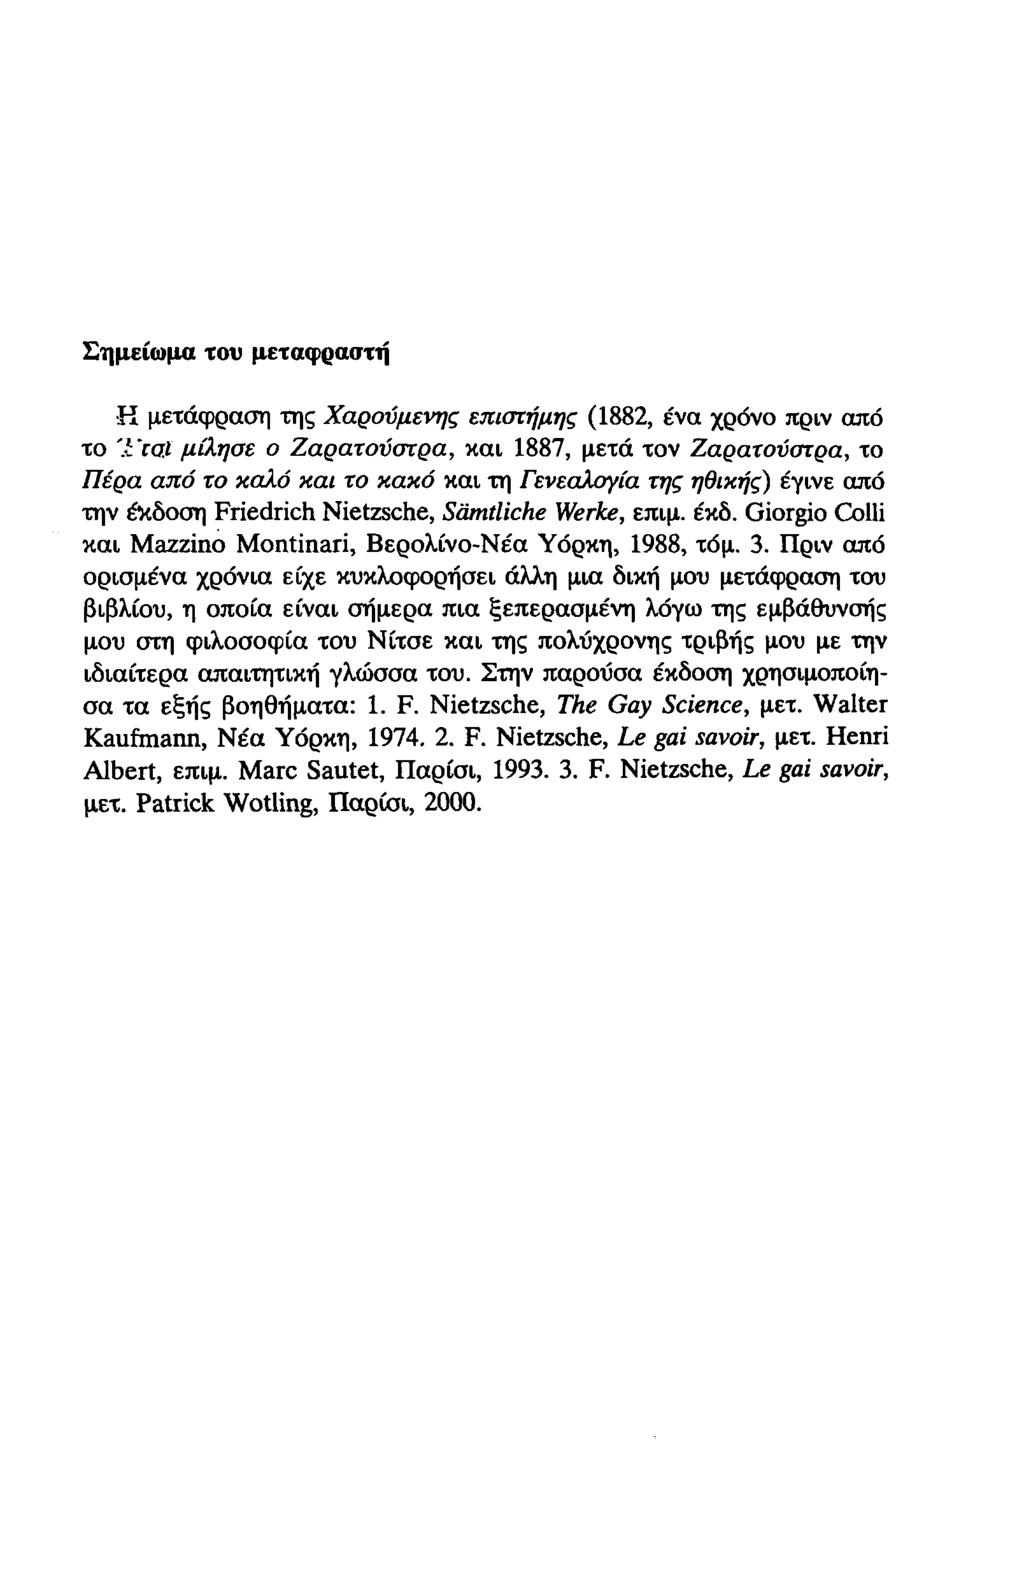 Σημείωμα του μεταφραστή R μετάφραση της Χαρούμενης επιστήμης (1882, ένα χρόνο πριν από το 'i rai μίλησε ο Ζαρατούστρα, και 1887, μετά τον Ζαρατούστρα, το Πέρα από το καλό και το κακό και τη